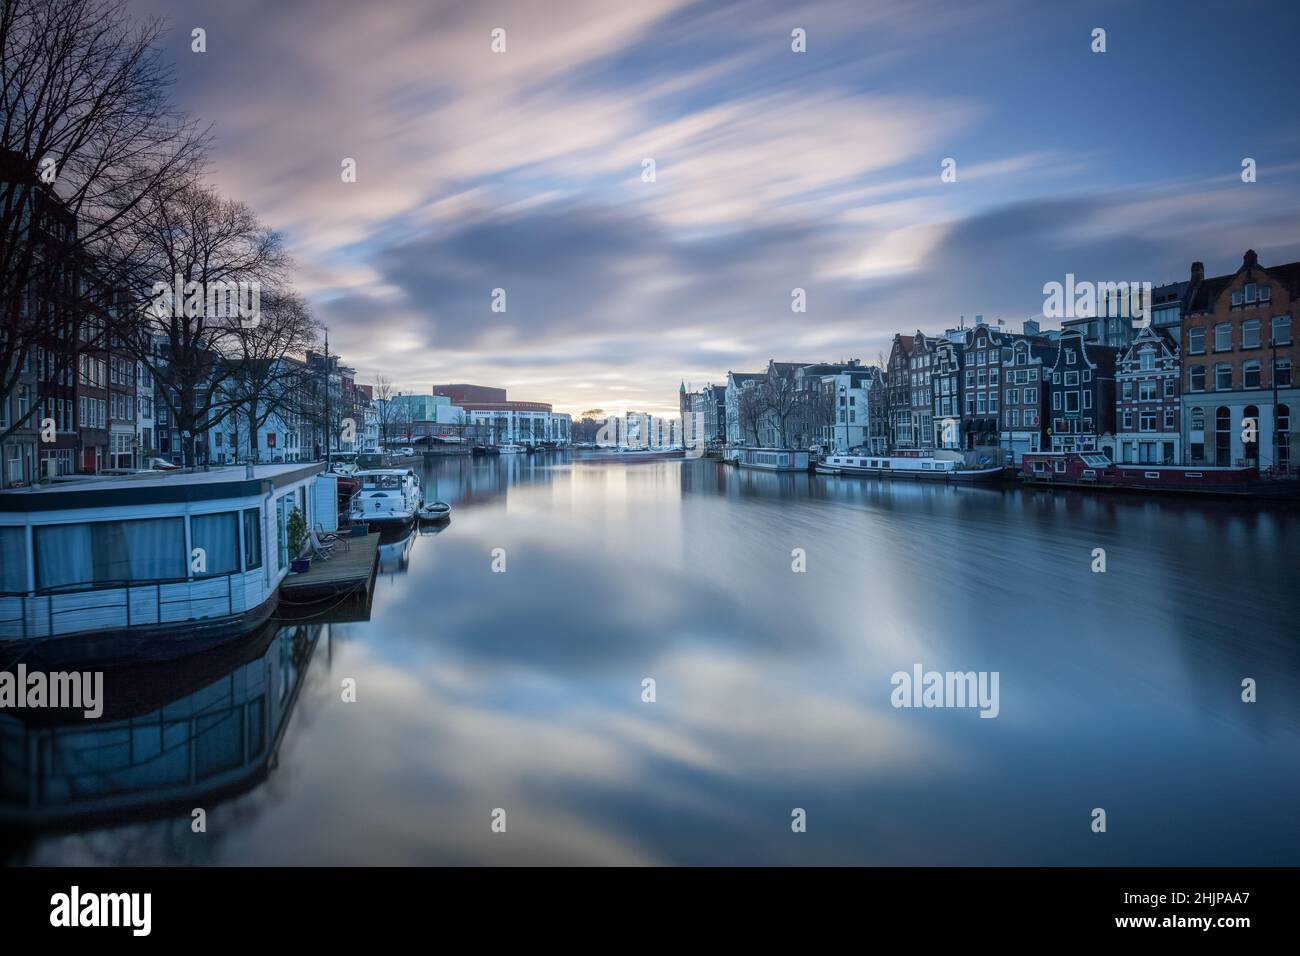 Vue sur le canal d'Amsterdam au lever du soleil avec une longue exposition, des bateaux-maisons et des barges fluviales amarrées Amsterdam, Hollande Banque D'Images